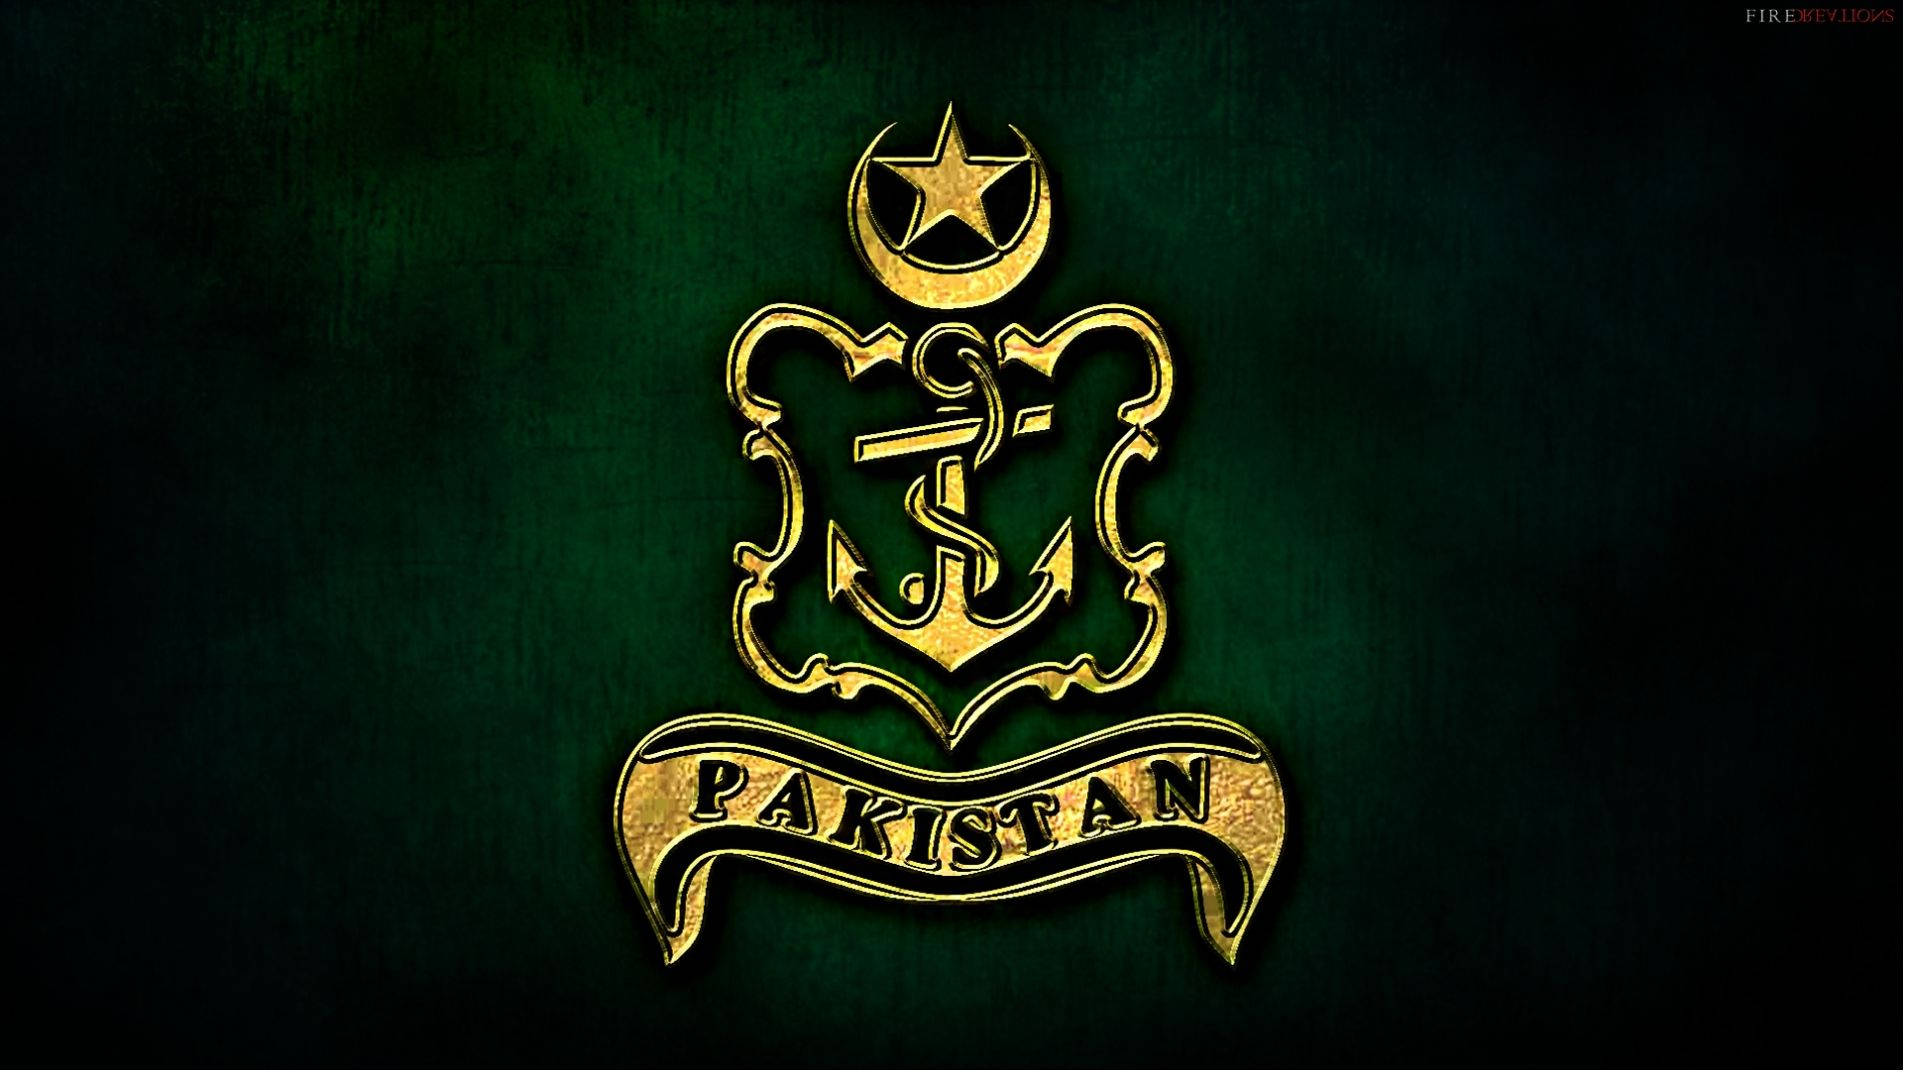 Pakistan Army Logo Wallpaper